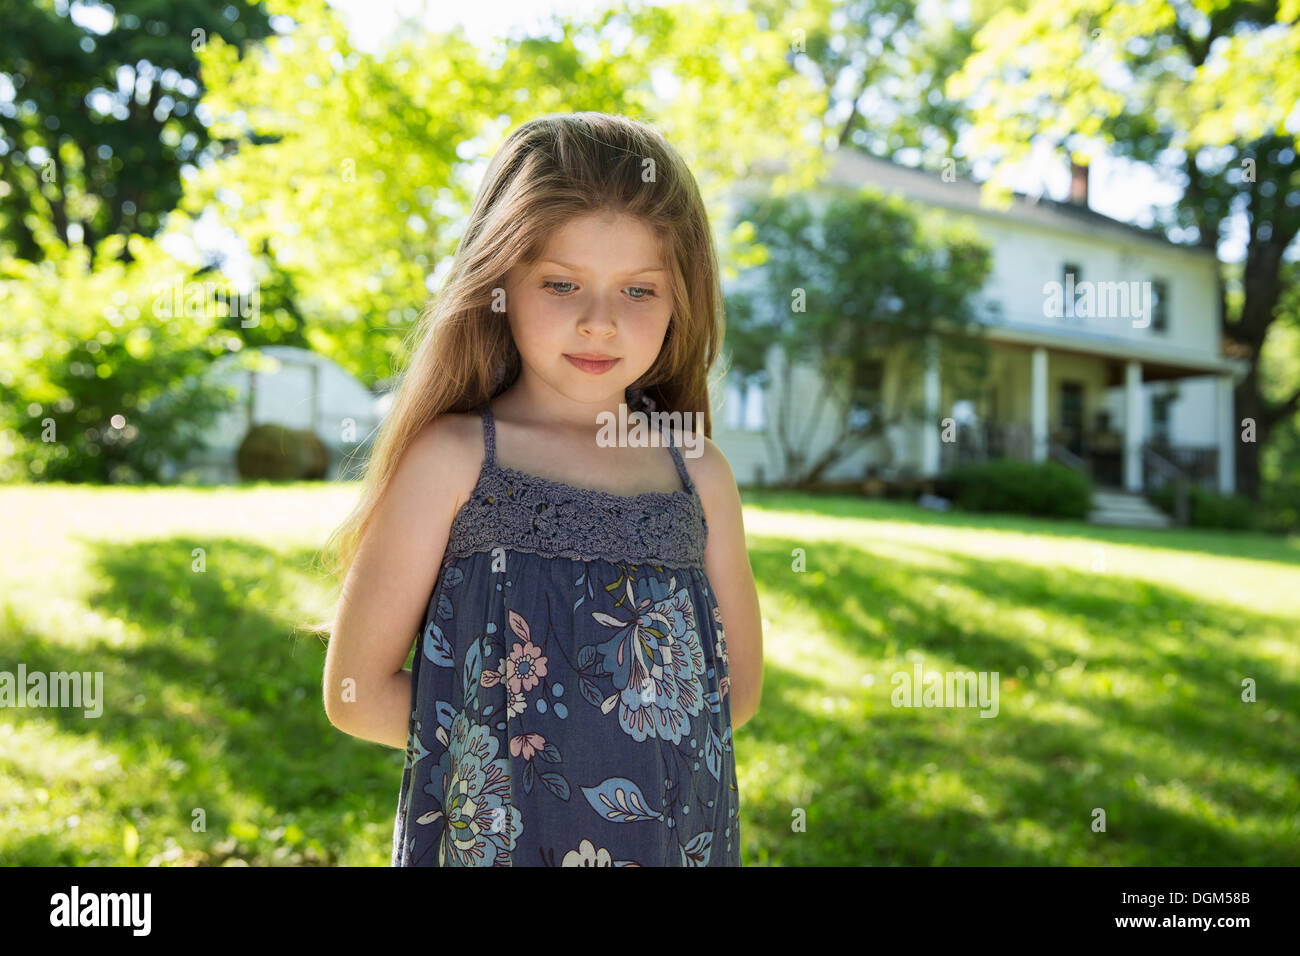 Al aire libre en verano. En la granja. Una niña en el jardín con sus manos detrás de su espalda. Foto de stock